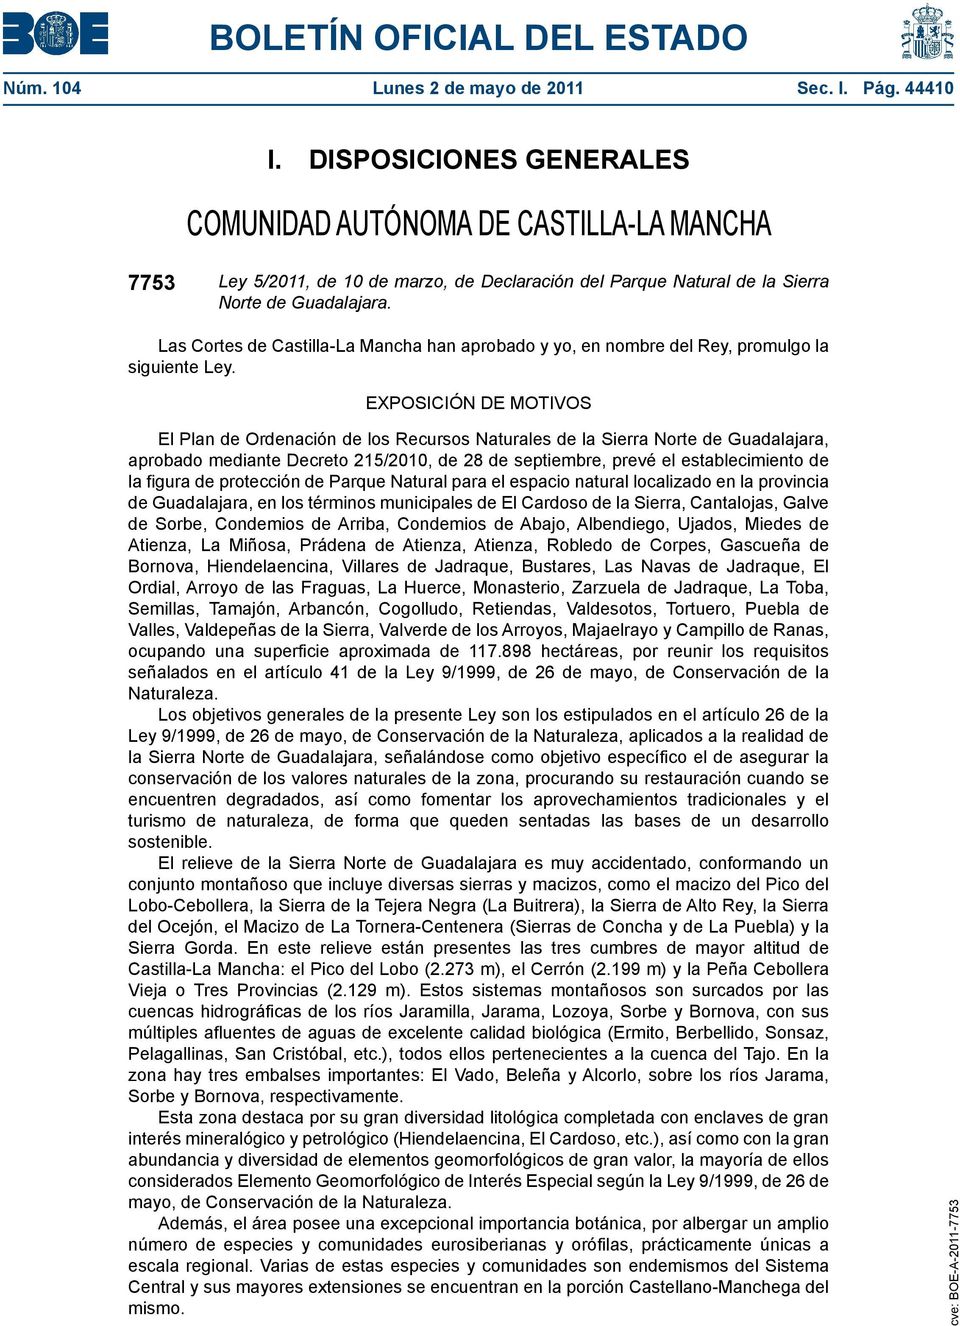 Las Cortes de Castilla-La Mancha han aprobado y yo, en nombre del Rey, promulgo la siguiente Ley.